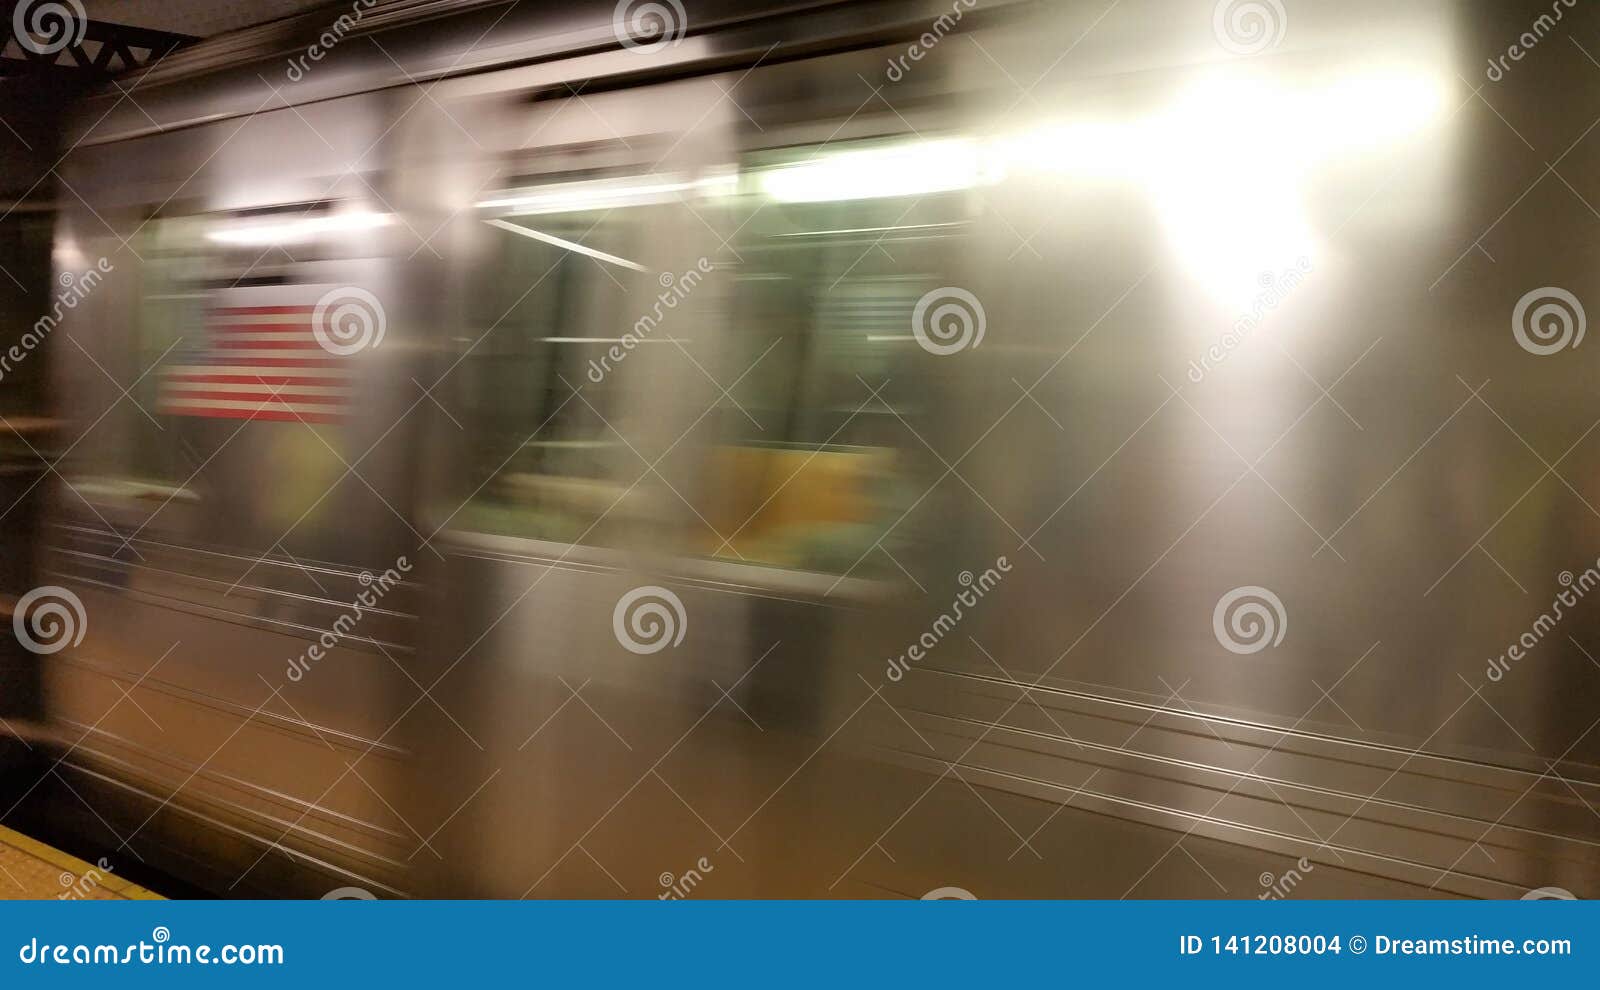 subway new york blur view